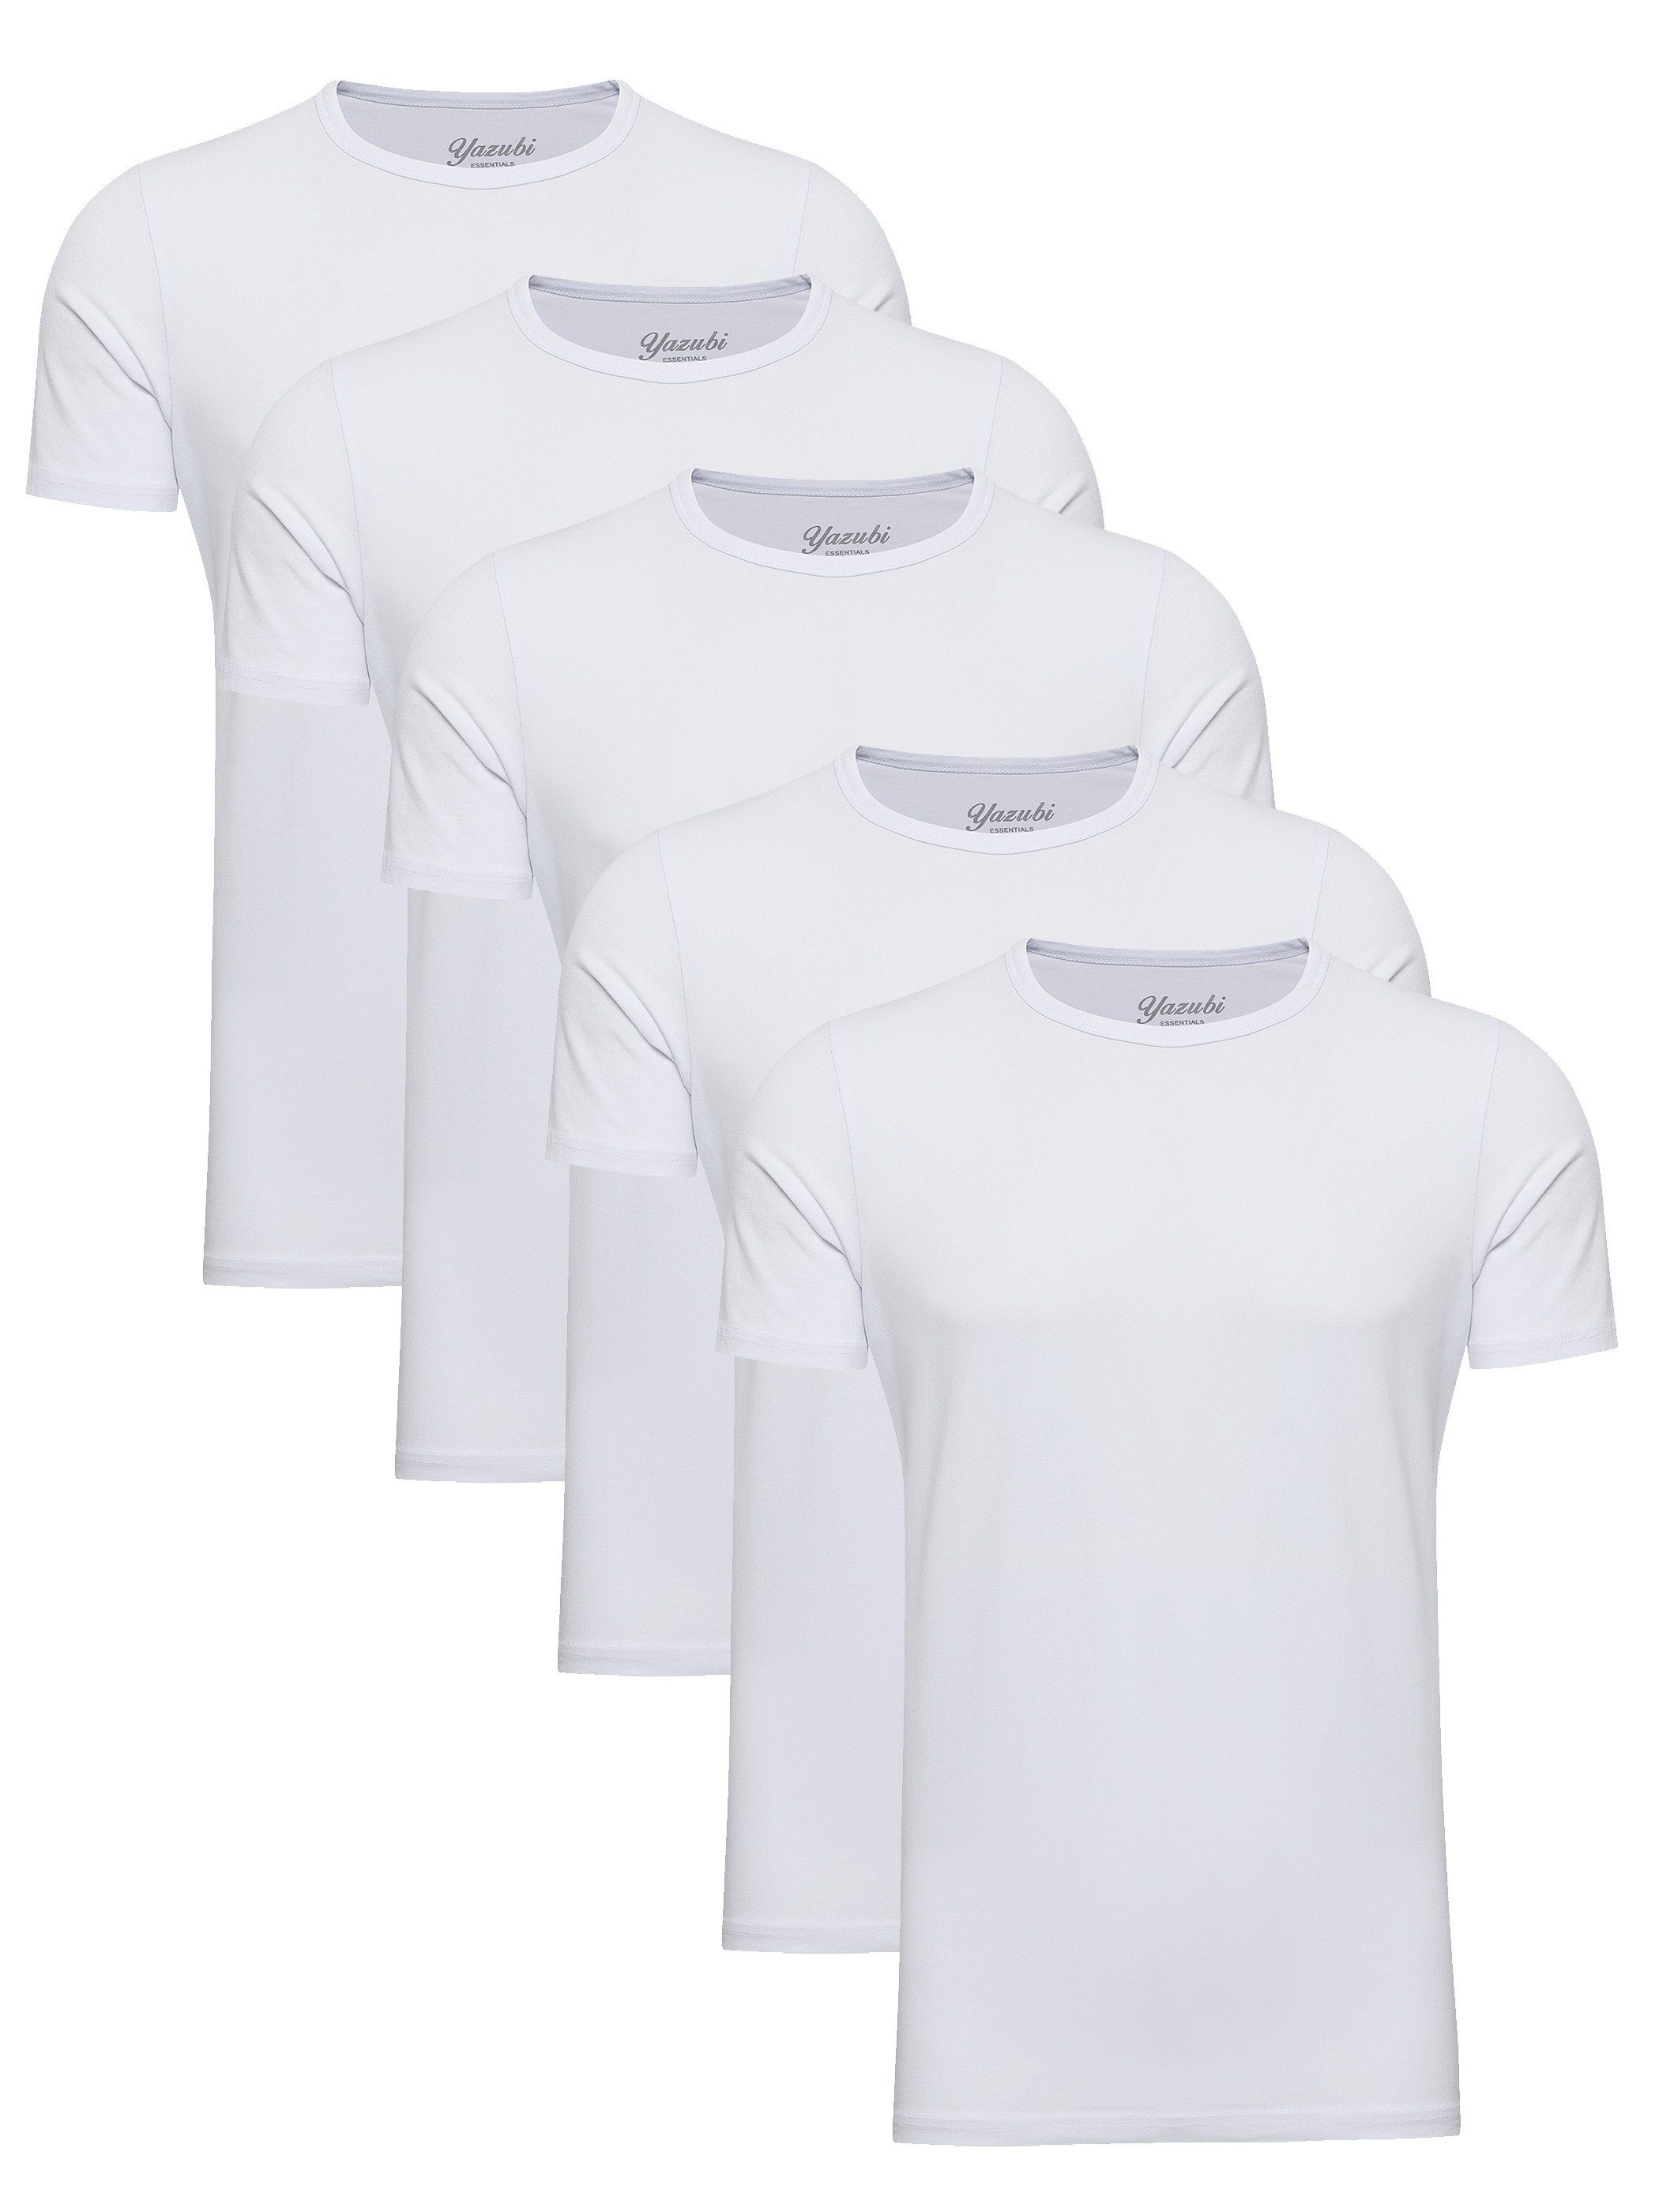 Fordern Sie den niedrigsten Preis heraus! Yazubi T-Shirt 5-Pack Mythic Rundhalsshirt Weiß 114001) (Set, modernes 5er-Pack) Neck (Brilliant Basic Tee White Crew